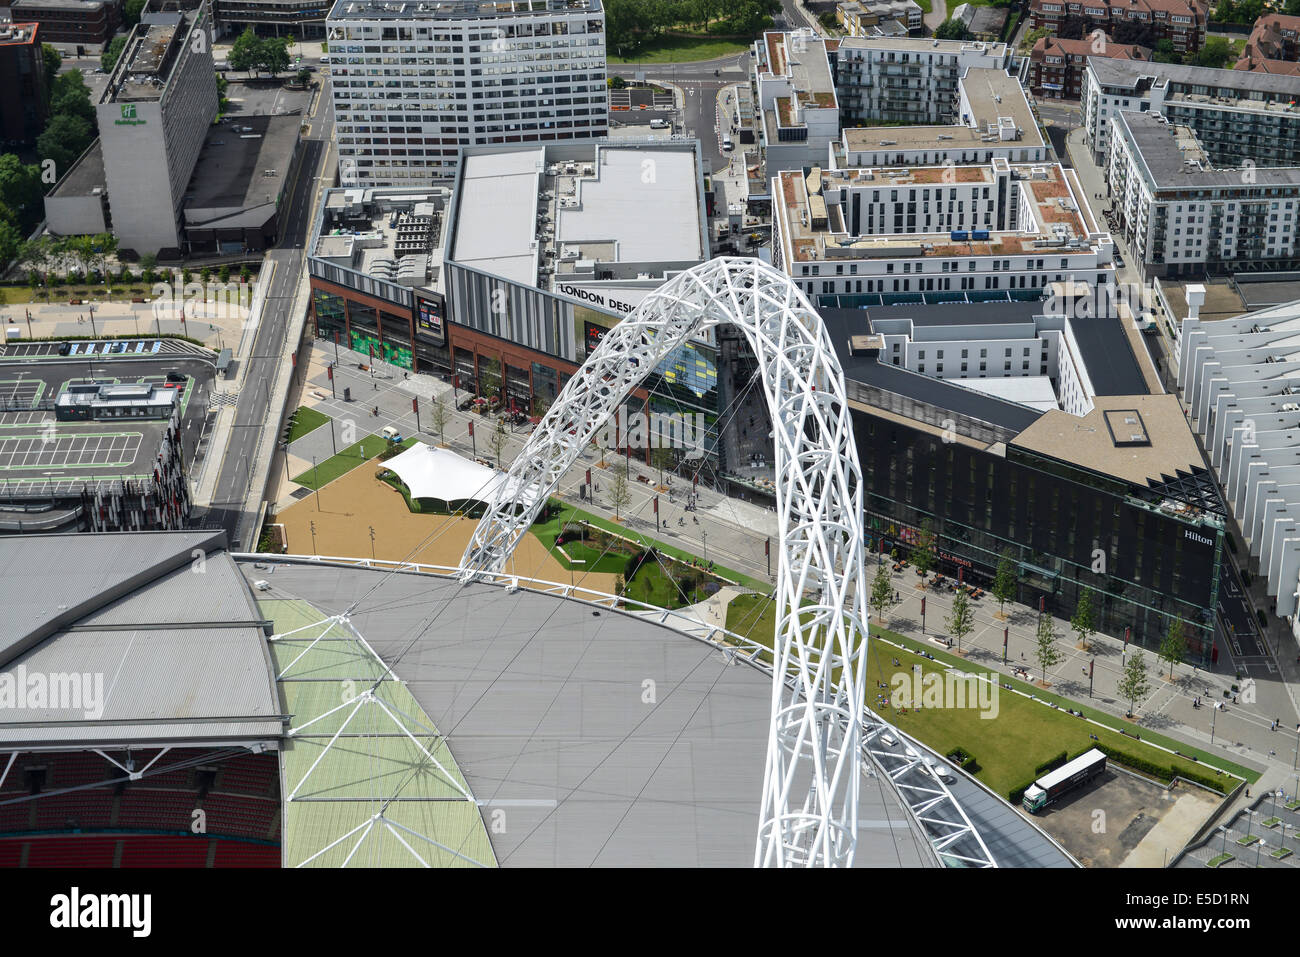 Une vue aérienne de la place centrale et le développement résidentiel au détail près de stade de Wembley, Londres. Banque D'Images